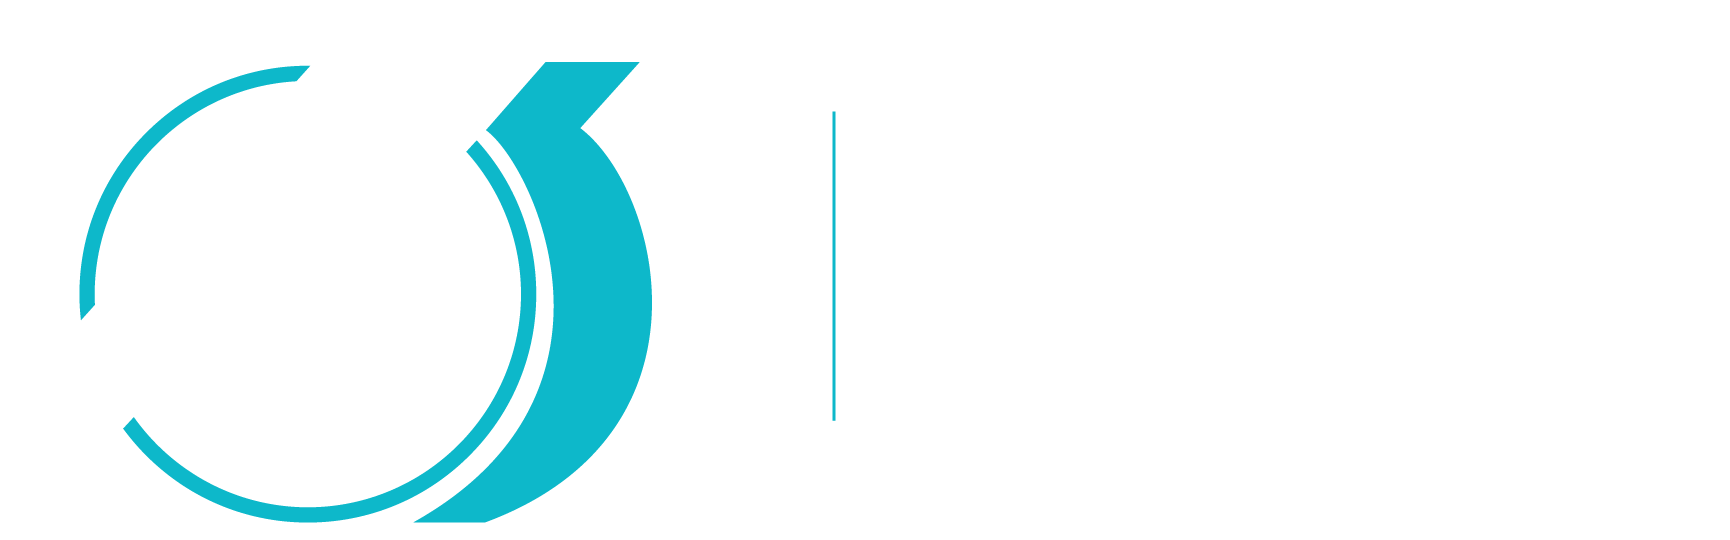 Techniques d'animation 3D et synthèse d'images du Cégep de Matane